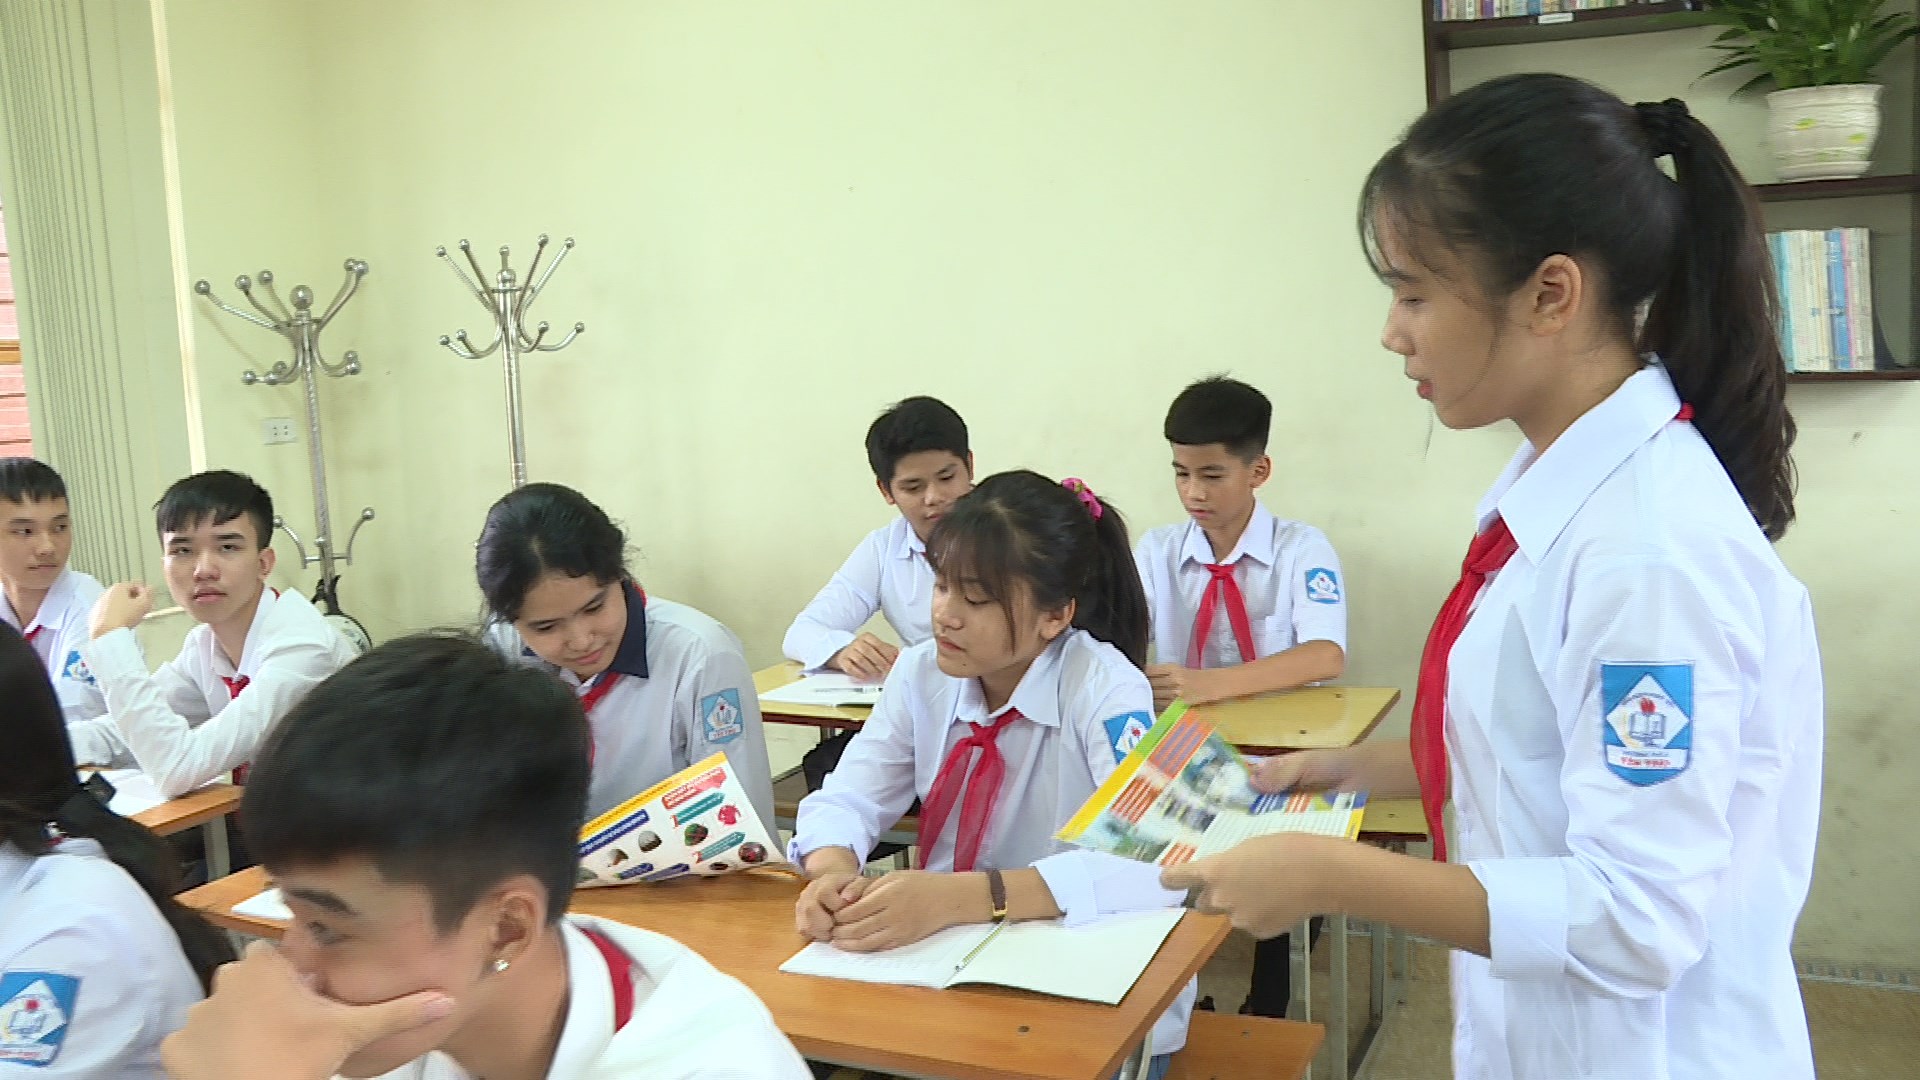 Học sinh Trường THCS Yên Thọ phát tờ rơi tuyên truyền Luật giao thông trong giờ học ngoại khoá.